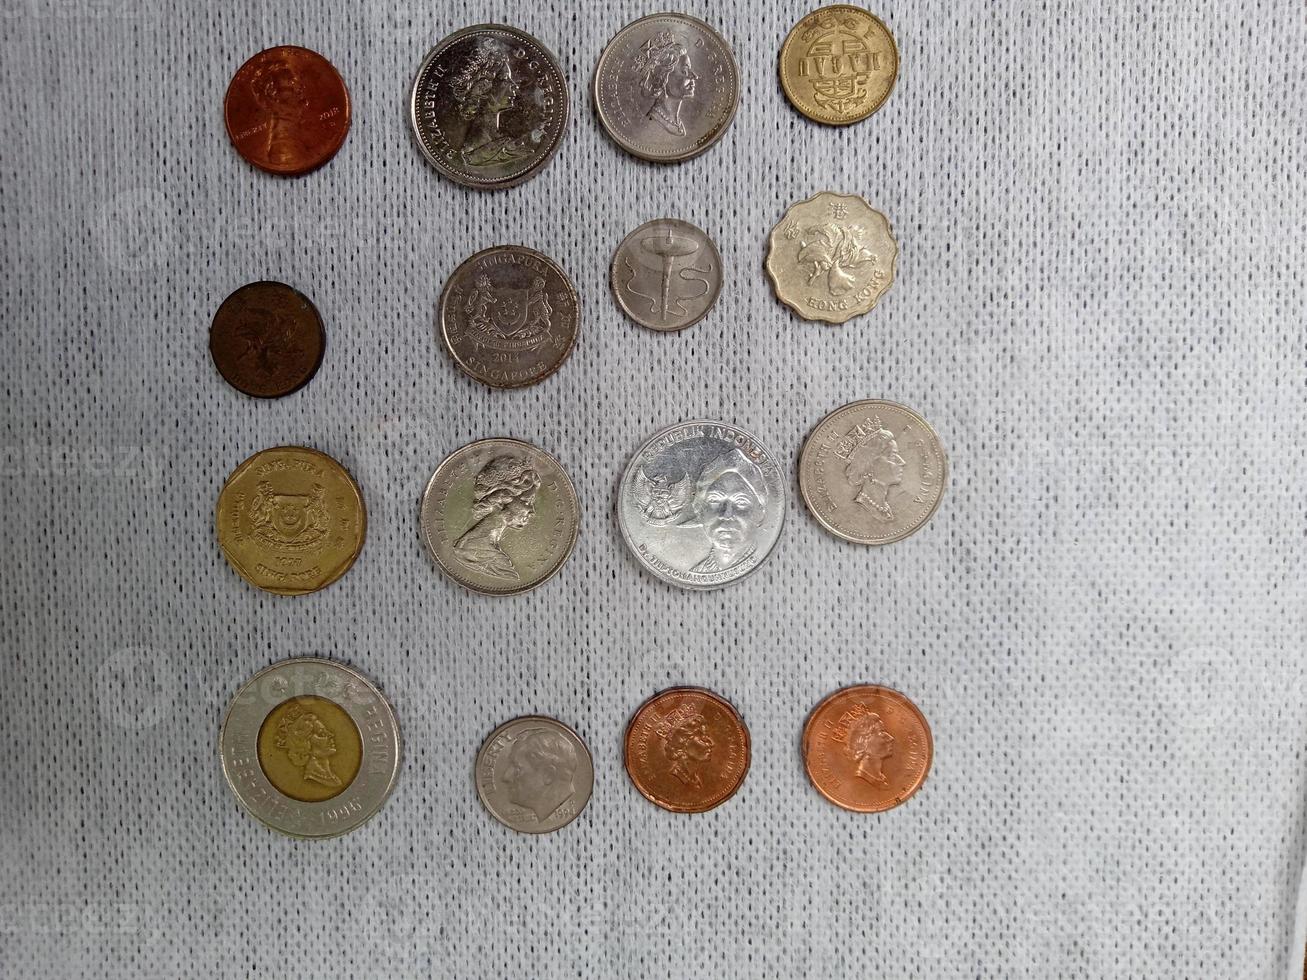 monedas con fotos de varios paises